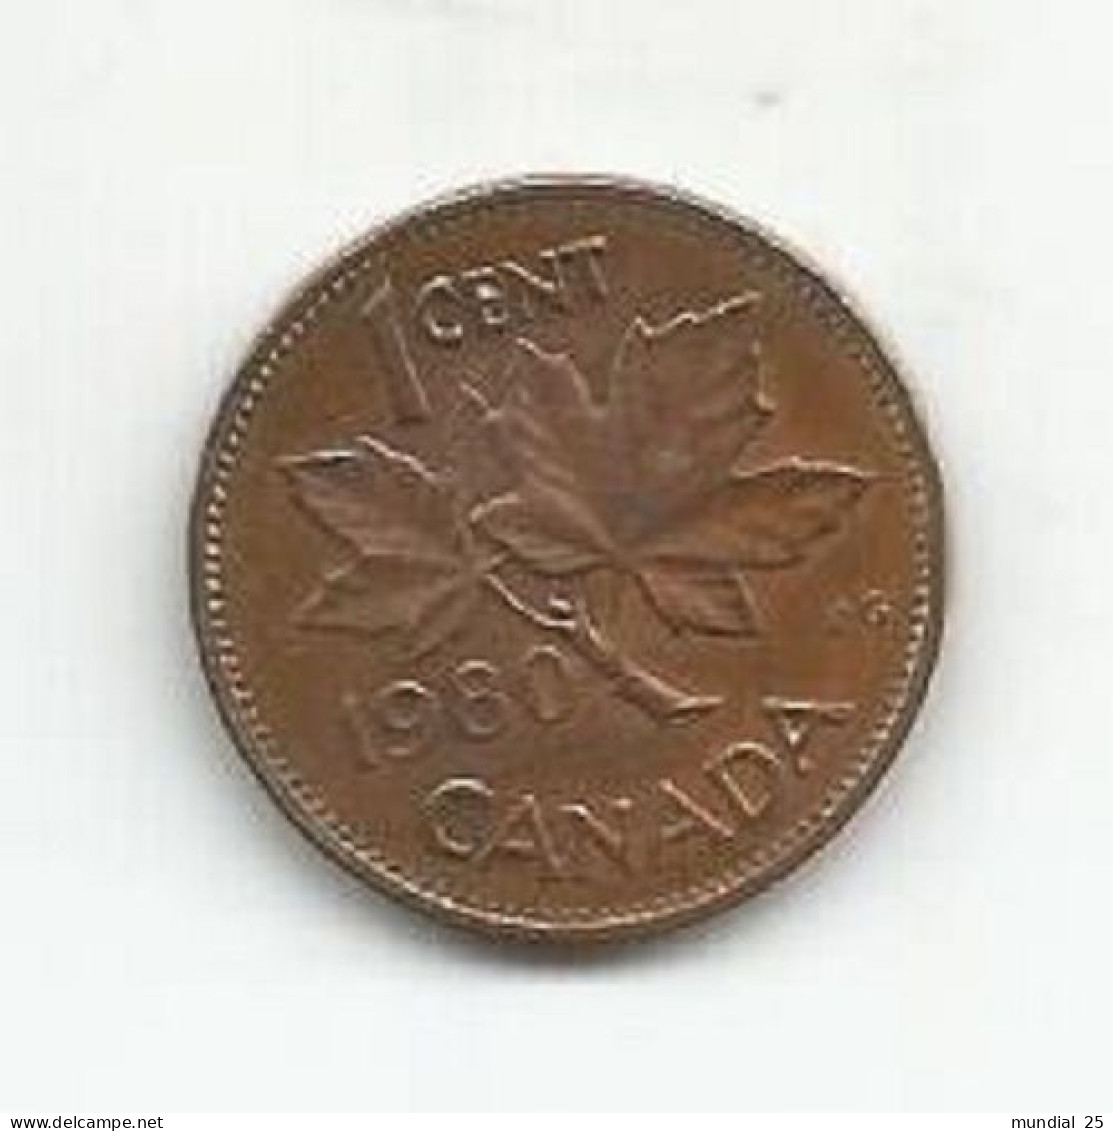 CANADA 1 CENT 1980 - Canada